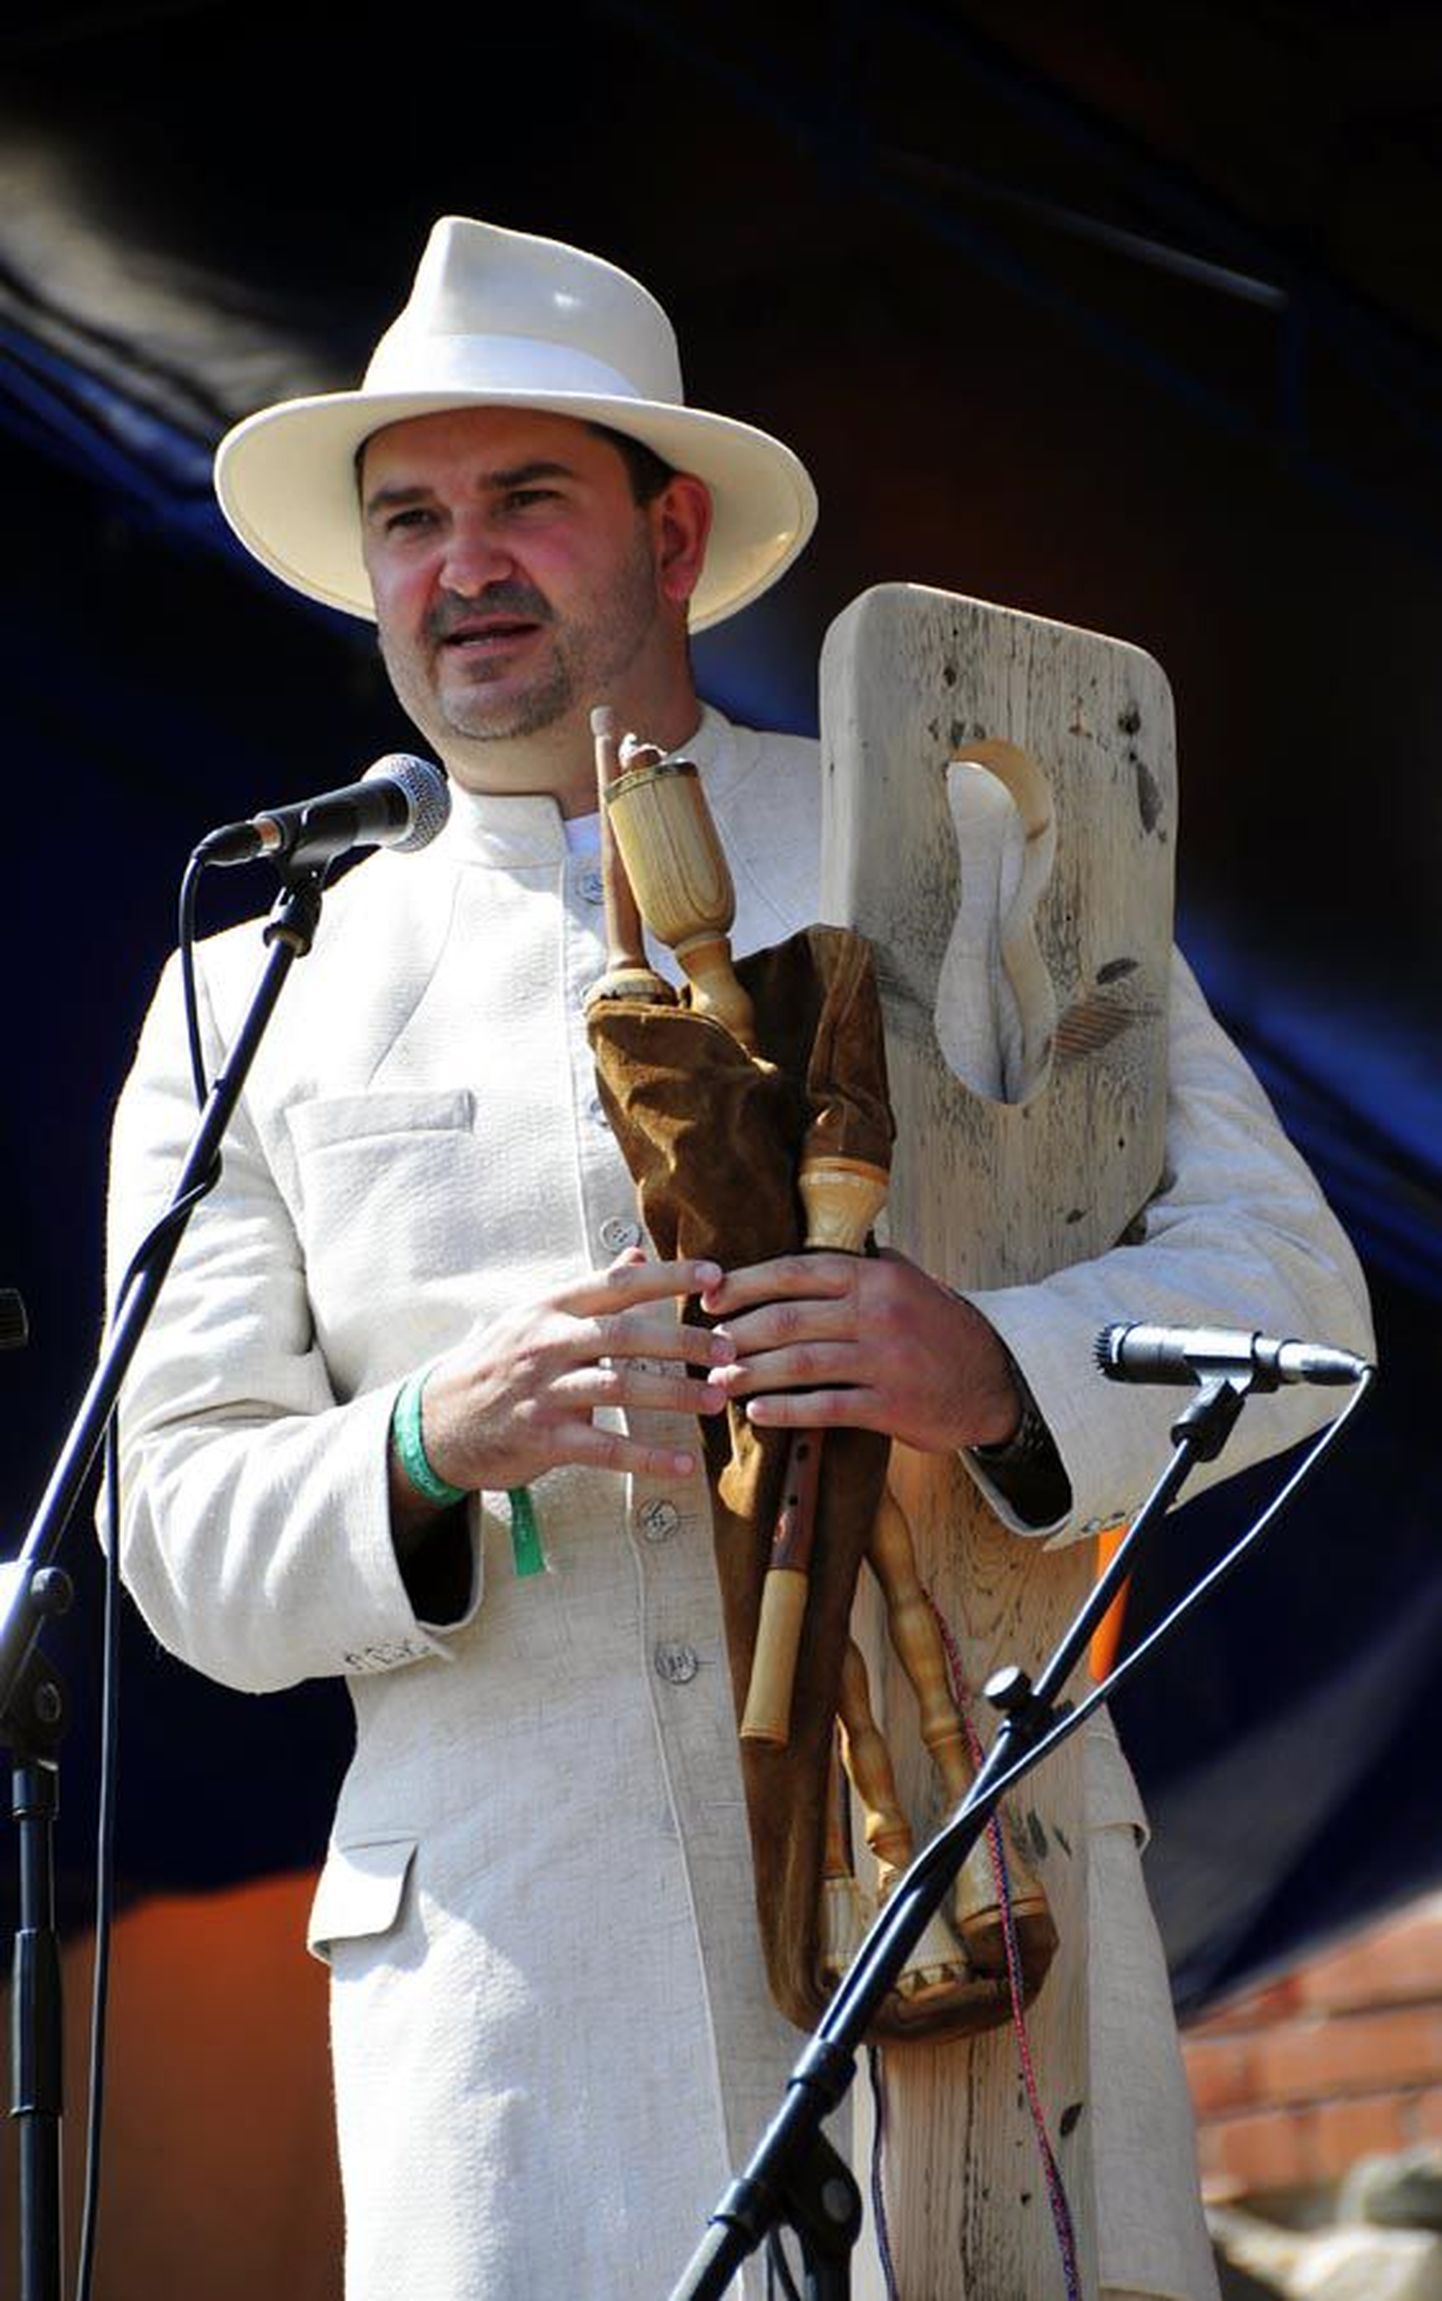 Uus linnapea Ando Kiviberg on aastaid korraldanud pärimusmuusika festivali ning oskab ka ise mitut rahvapilli mängida.